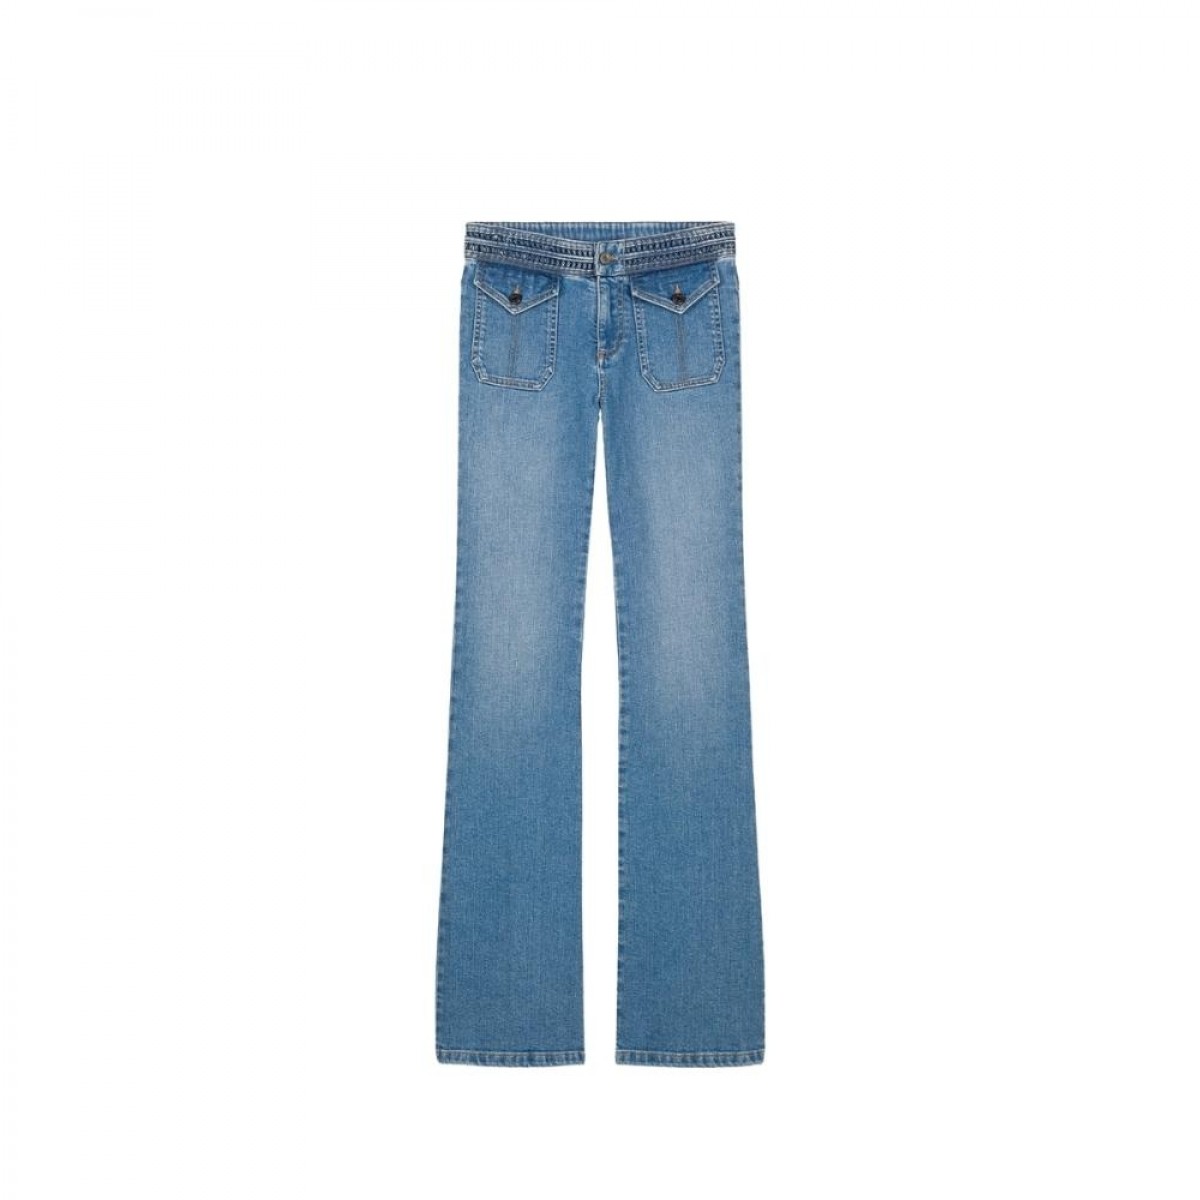 nano jeans - indigo - front